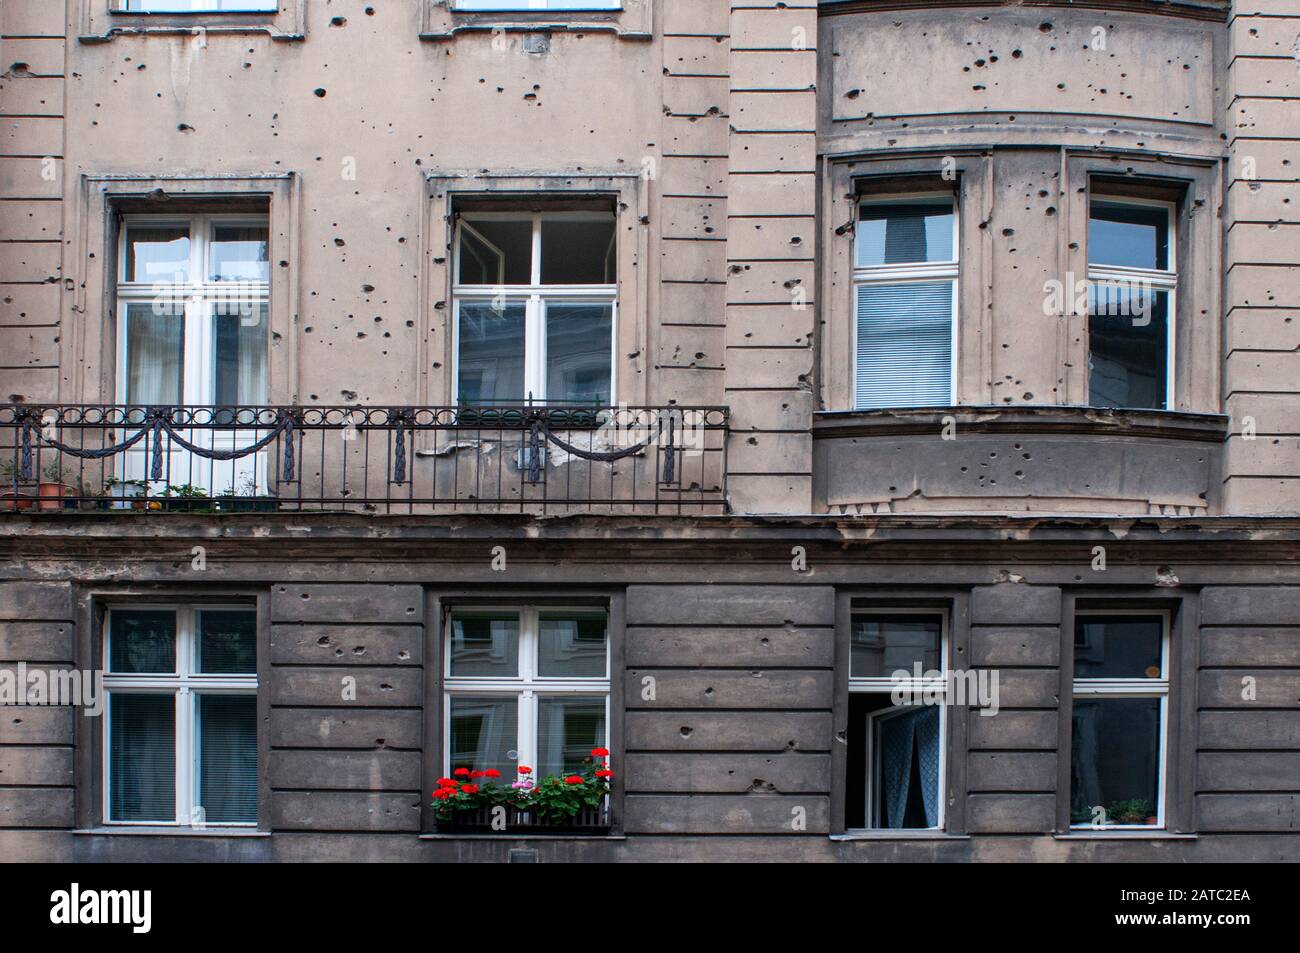 Die Narben des Krieges in Berlin Deutschland. Es sieht so aus, als ob eine Granate auf dieses Haus geschossen wurde und dabei zwei Fenster und deren Umgebung zerstört wurden. Die Steine Stockfoto